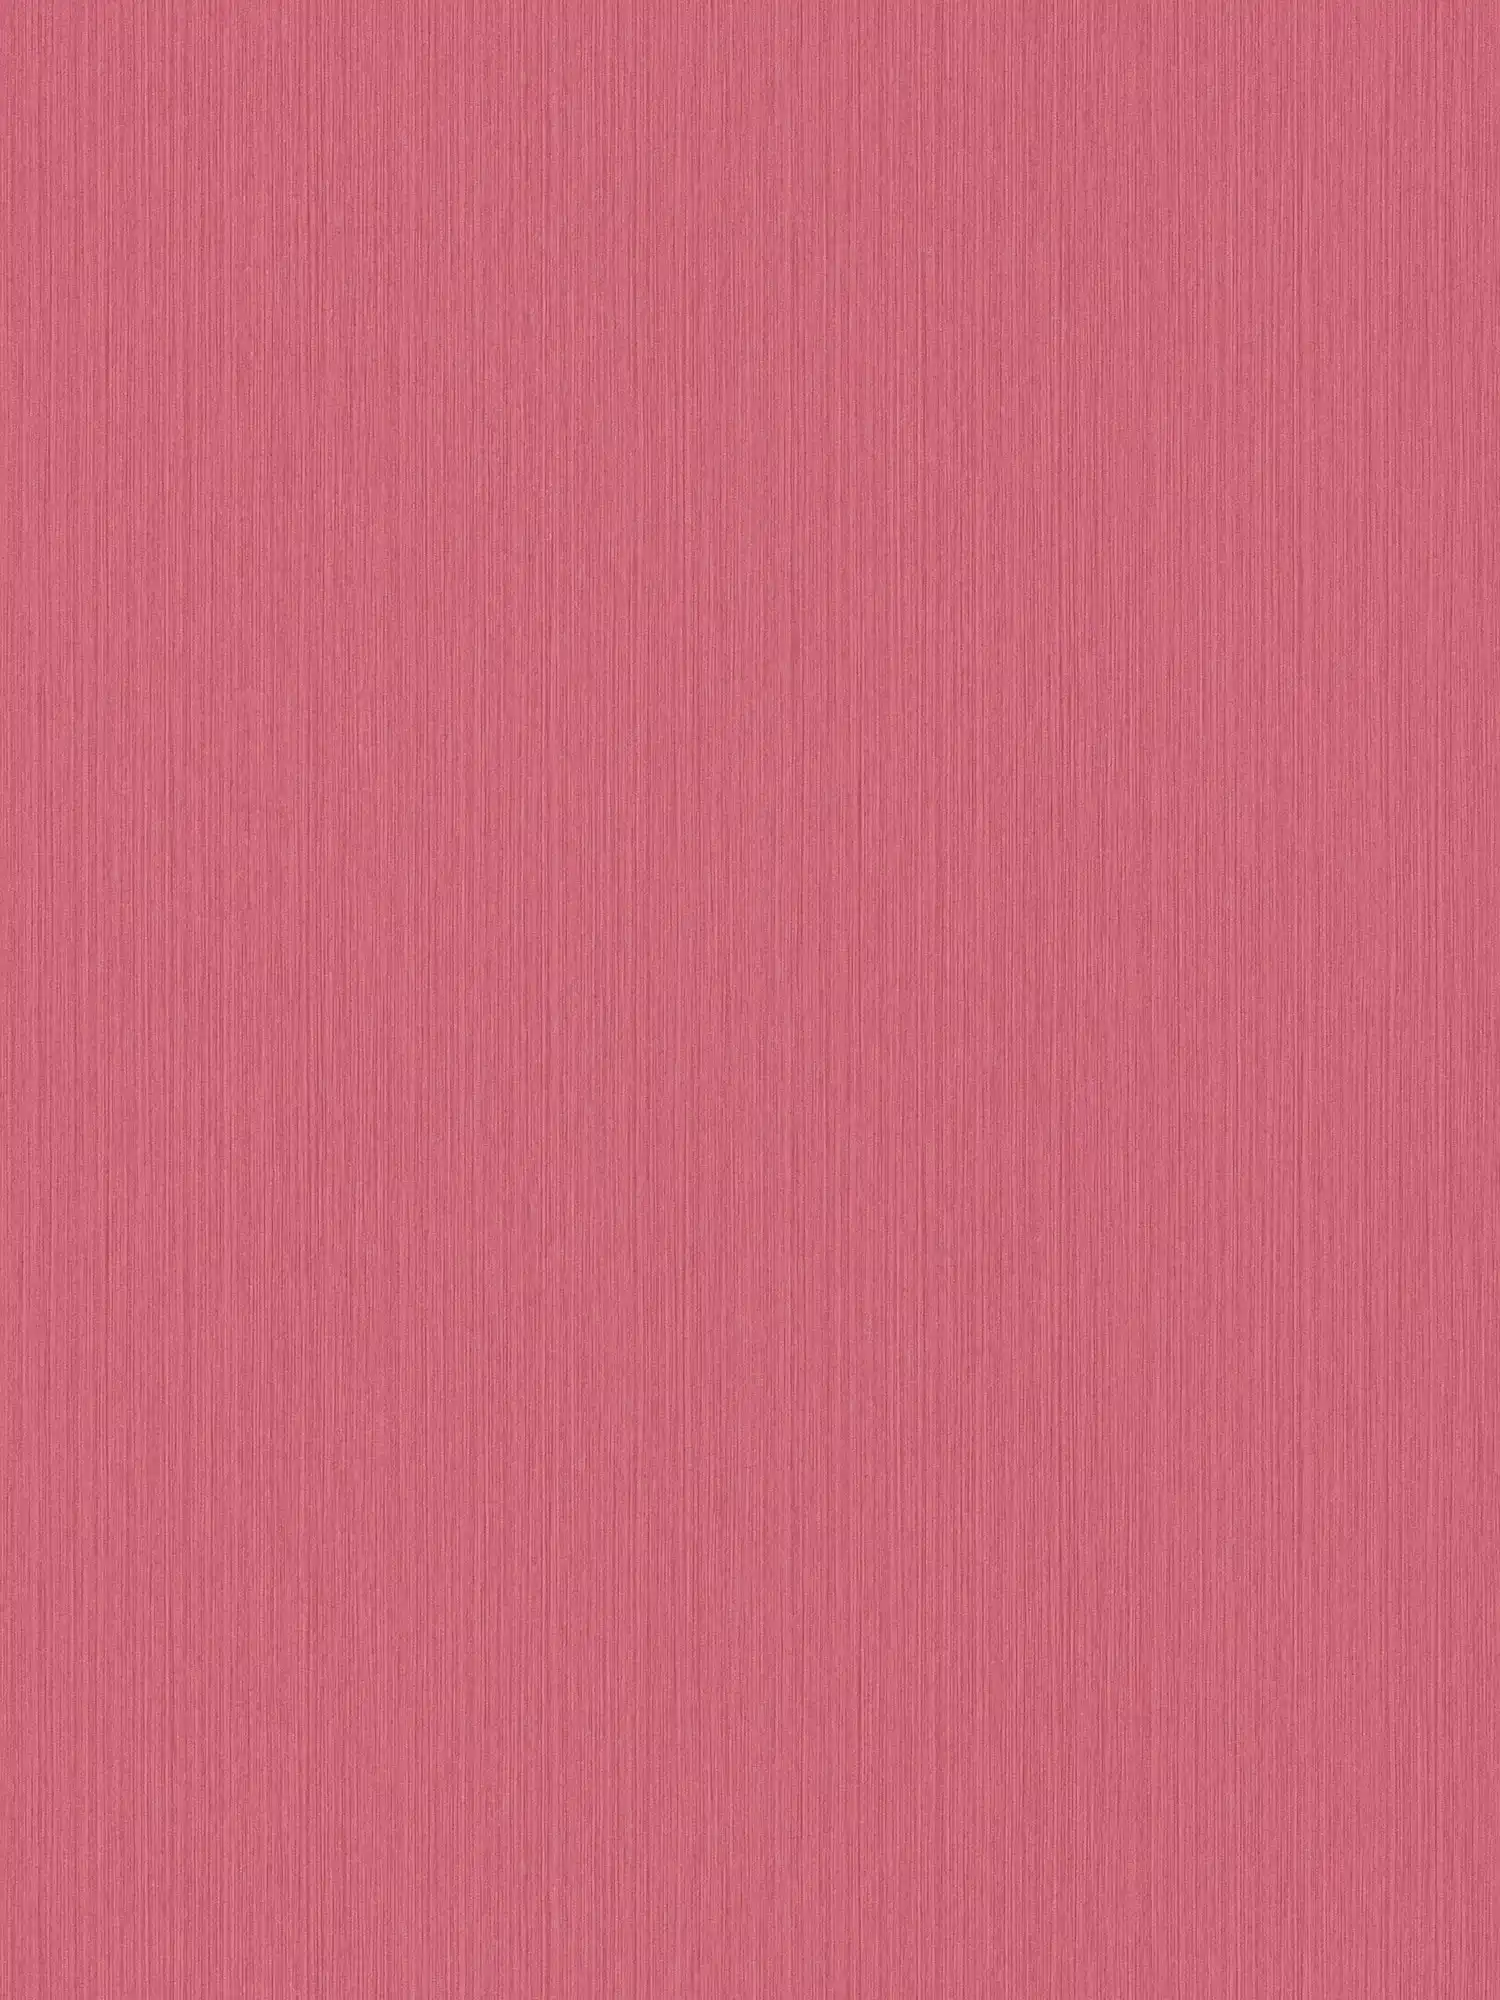 Roze behang met gevlekt textieleffect van MICHALSKY
